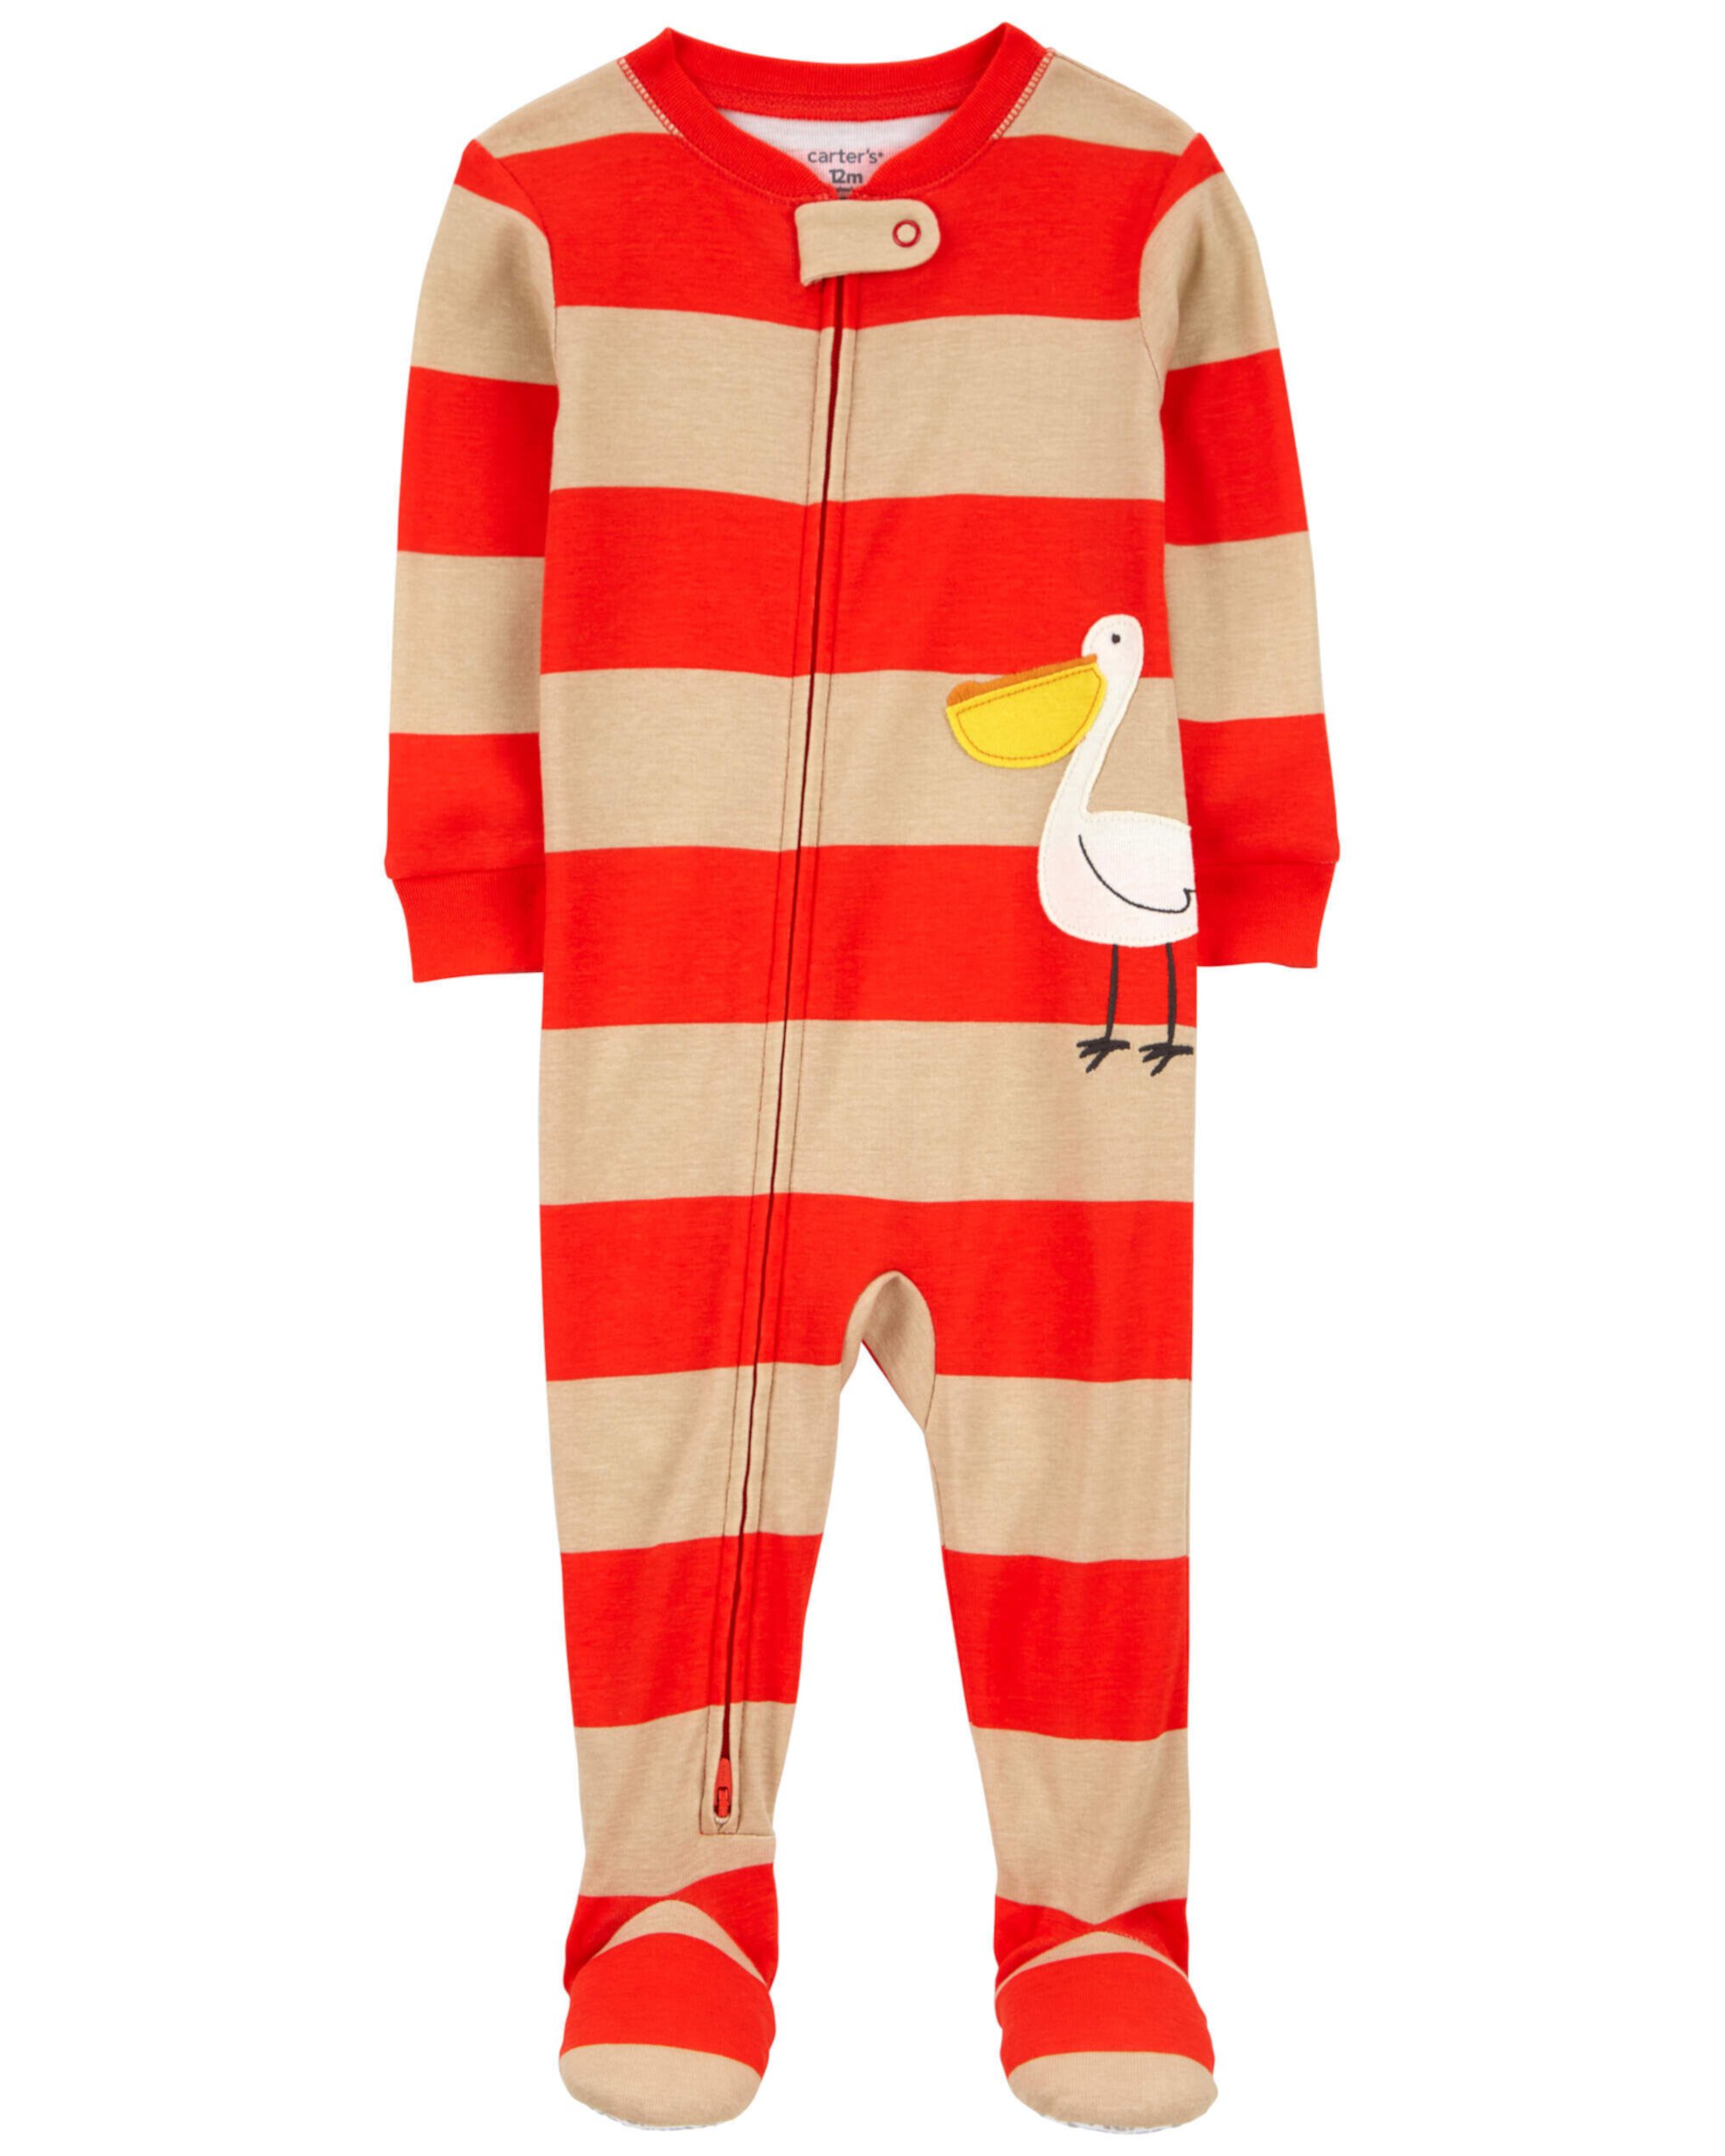 Цельная пижама из 100% плотно прилегающего хлопка «Пеликан» для малышей Carter's